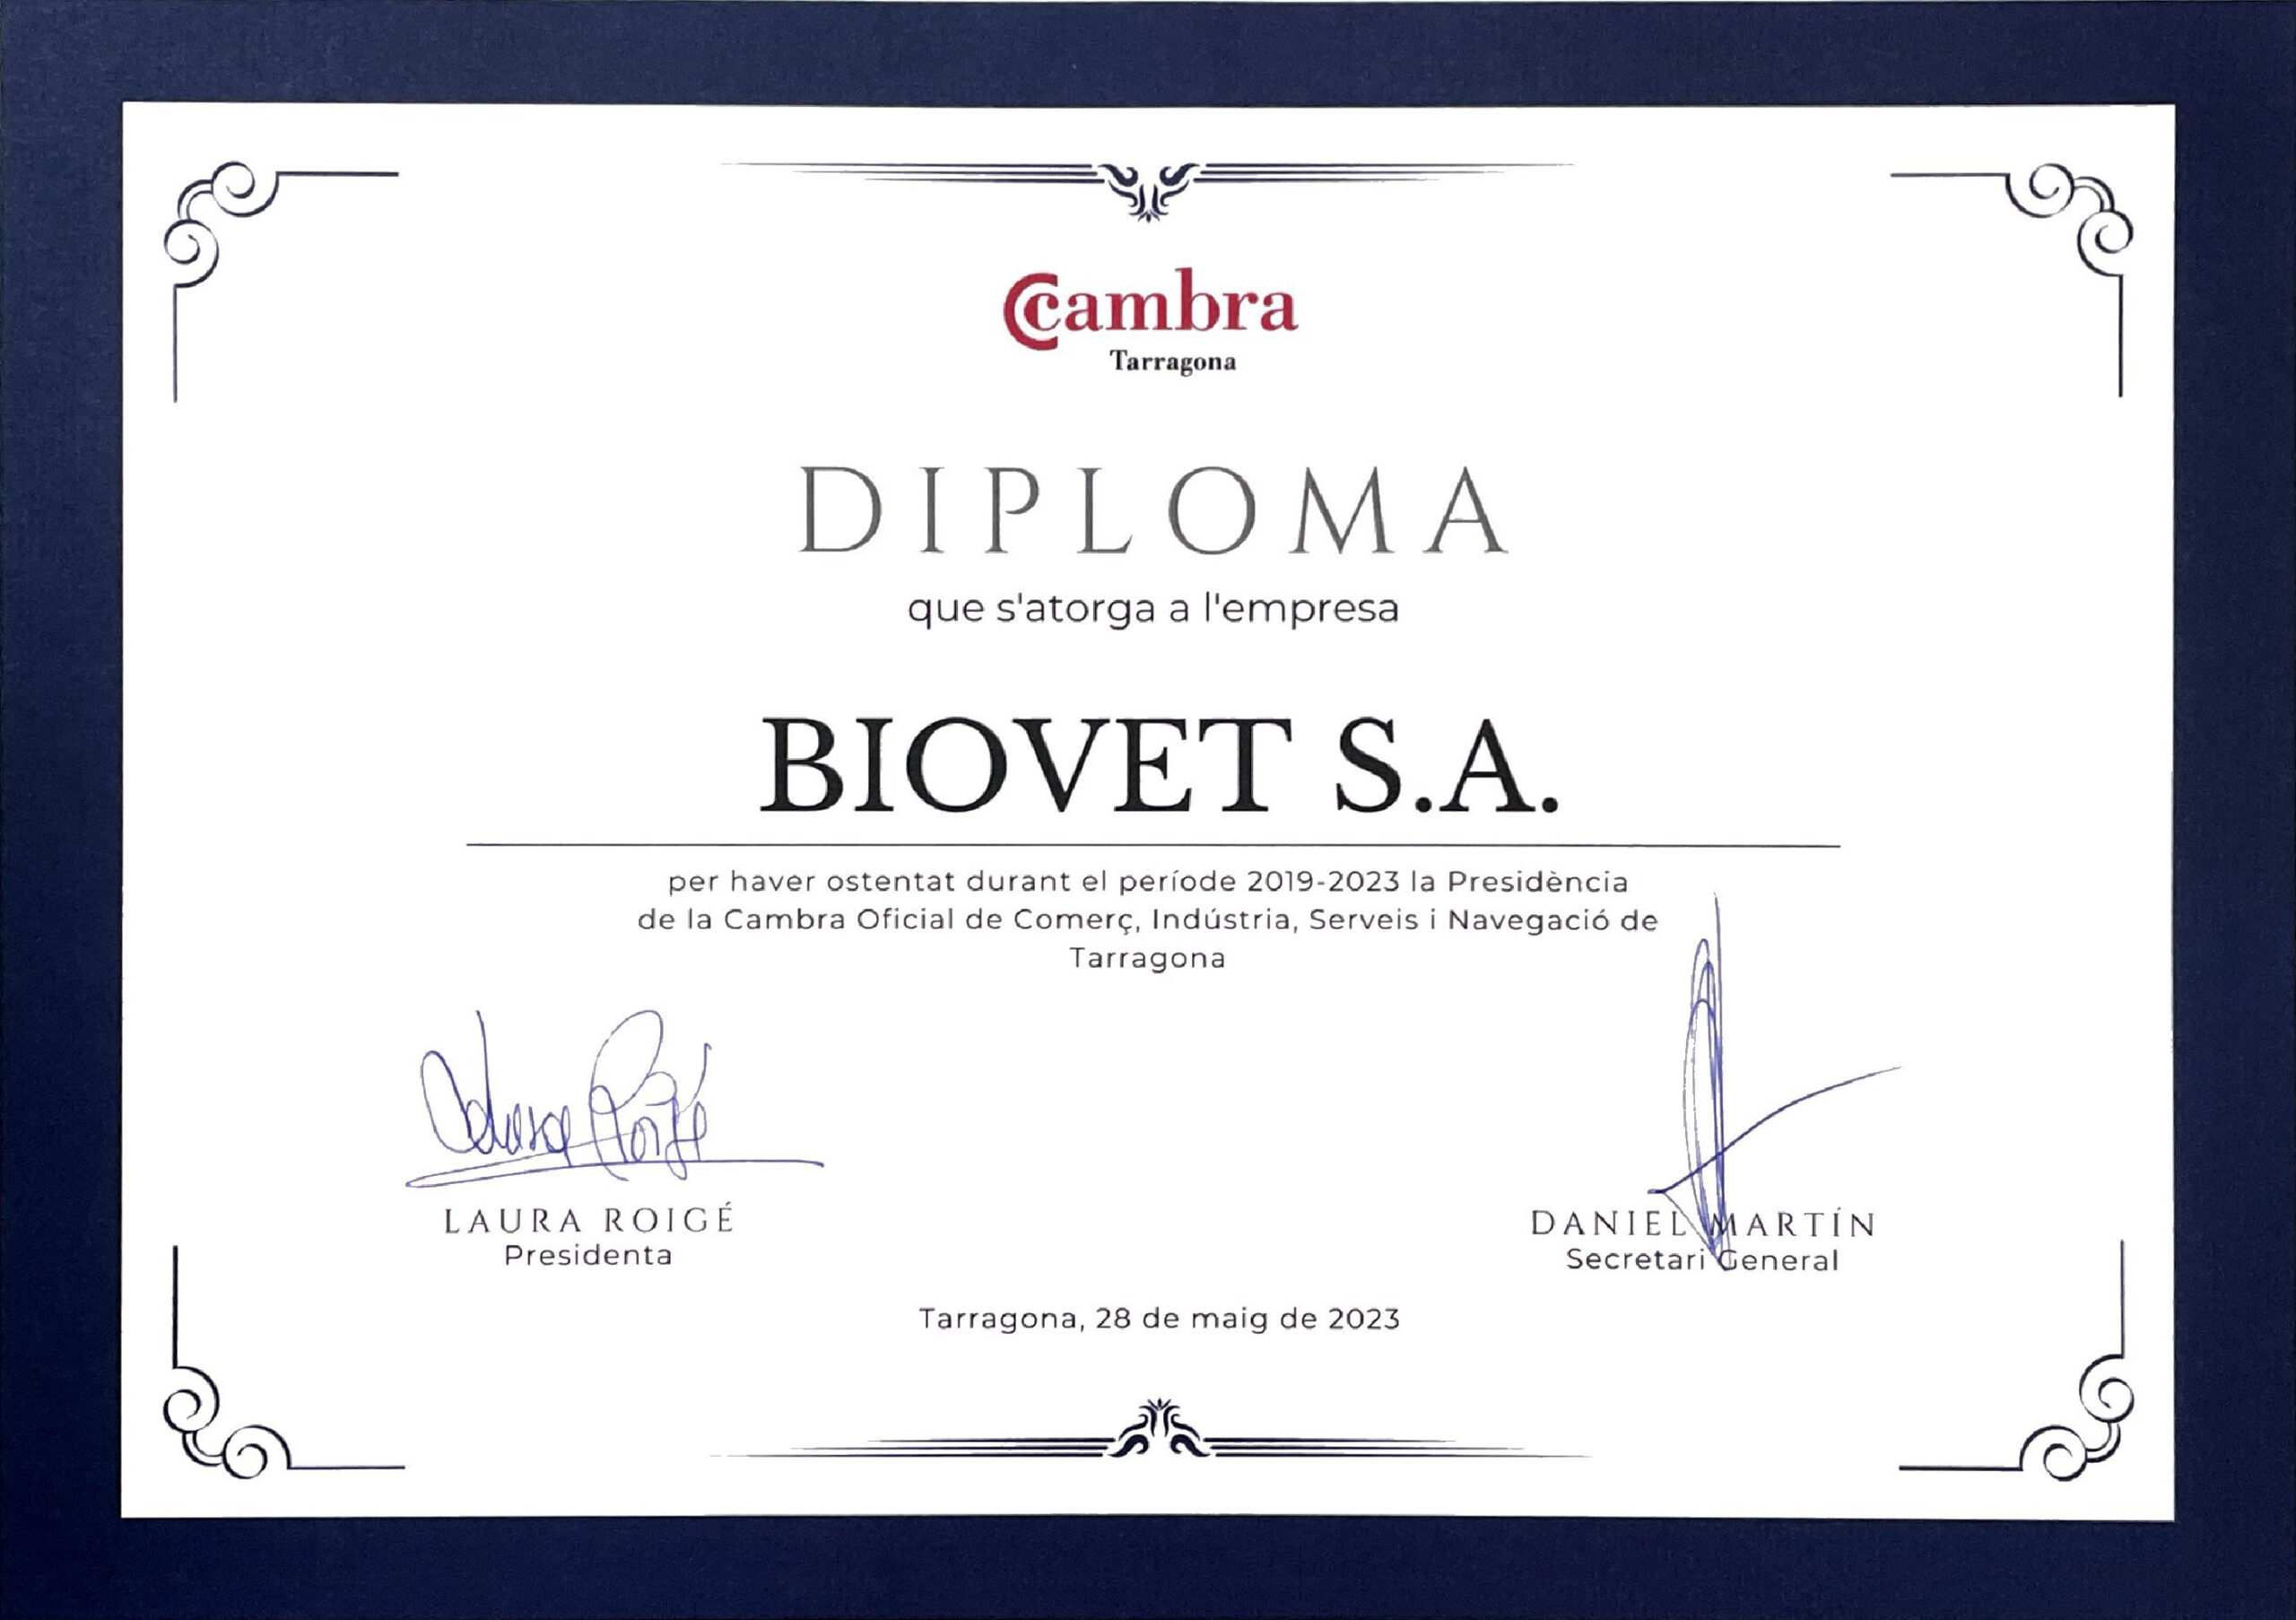 Biovet S.A. recibió el reconocimiento de la Cámara de Comercio de Tarragona